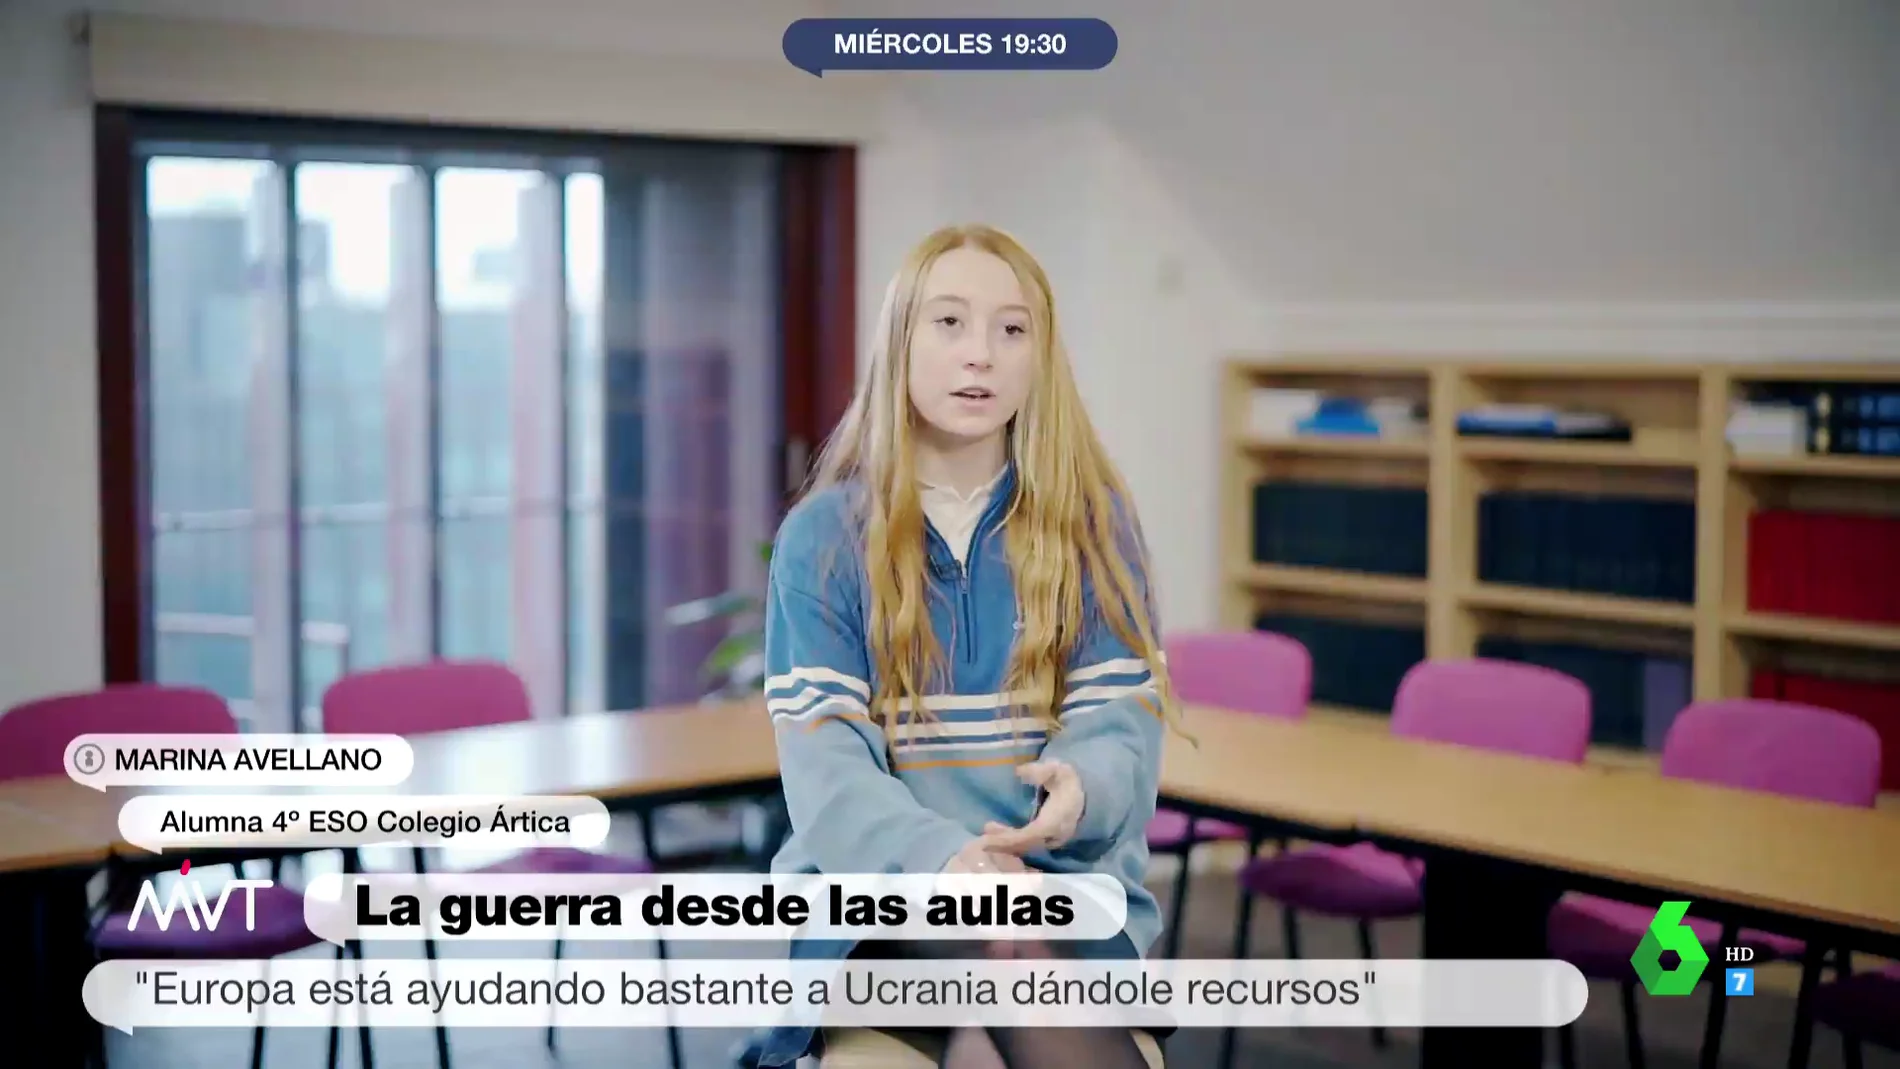 La guerra, desde las aulas: así se trata la invasión rusa en Ucrania en los colegios españoles